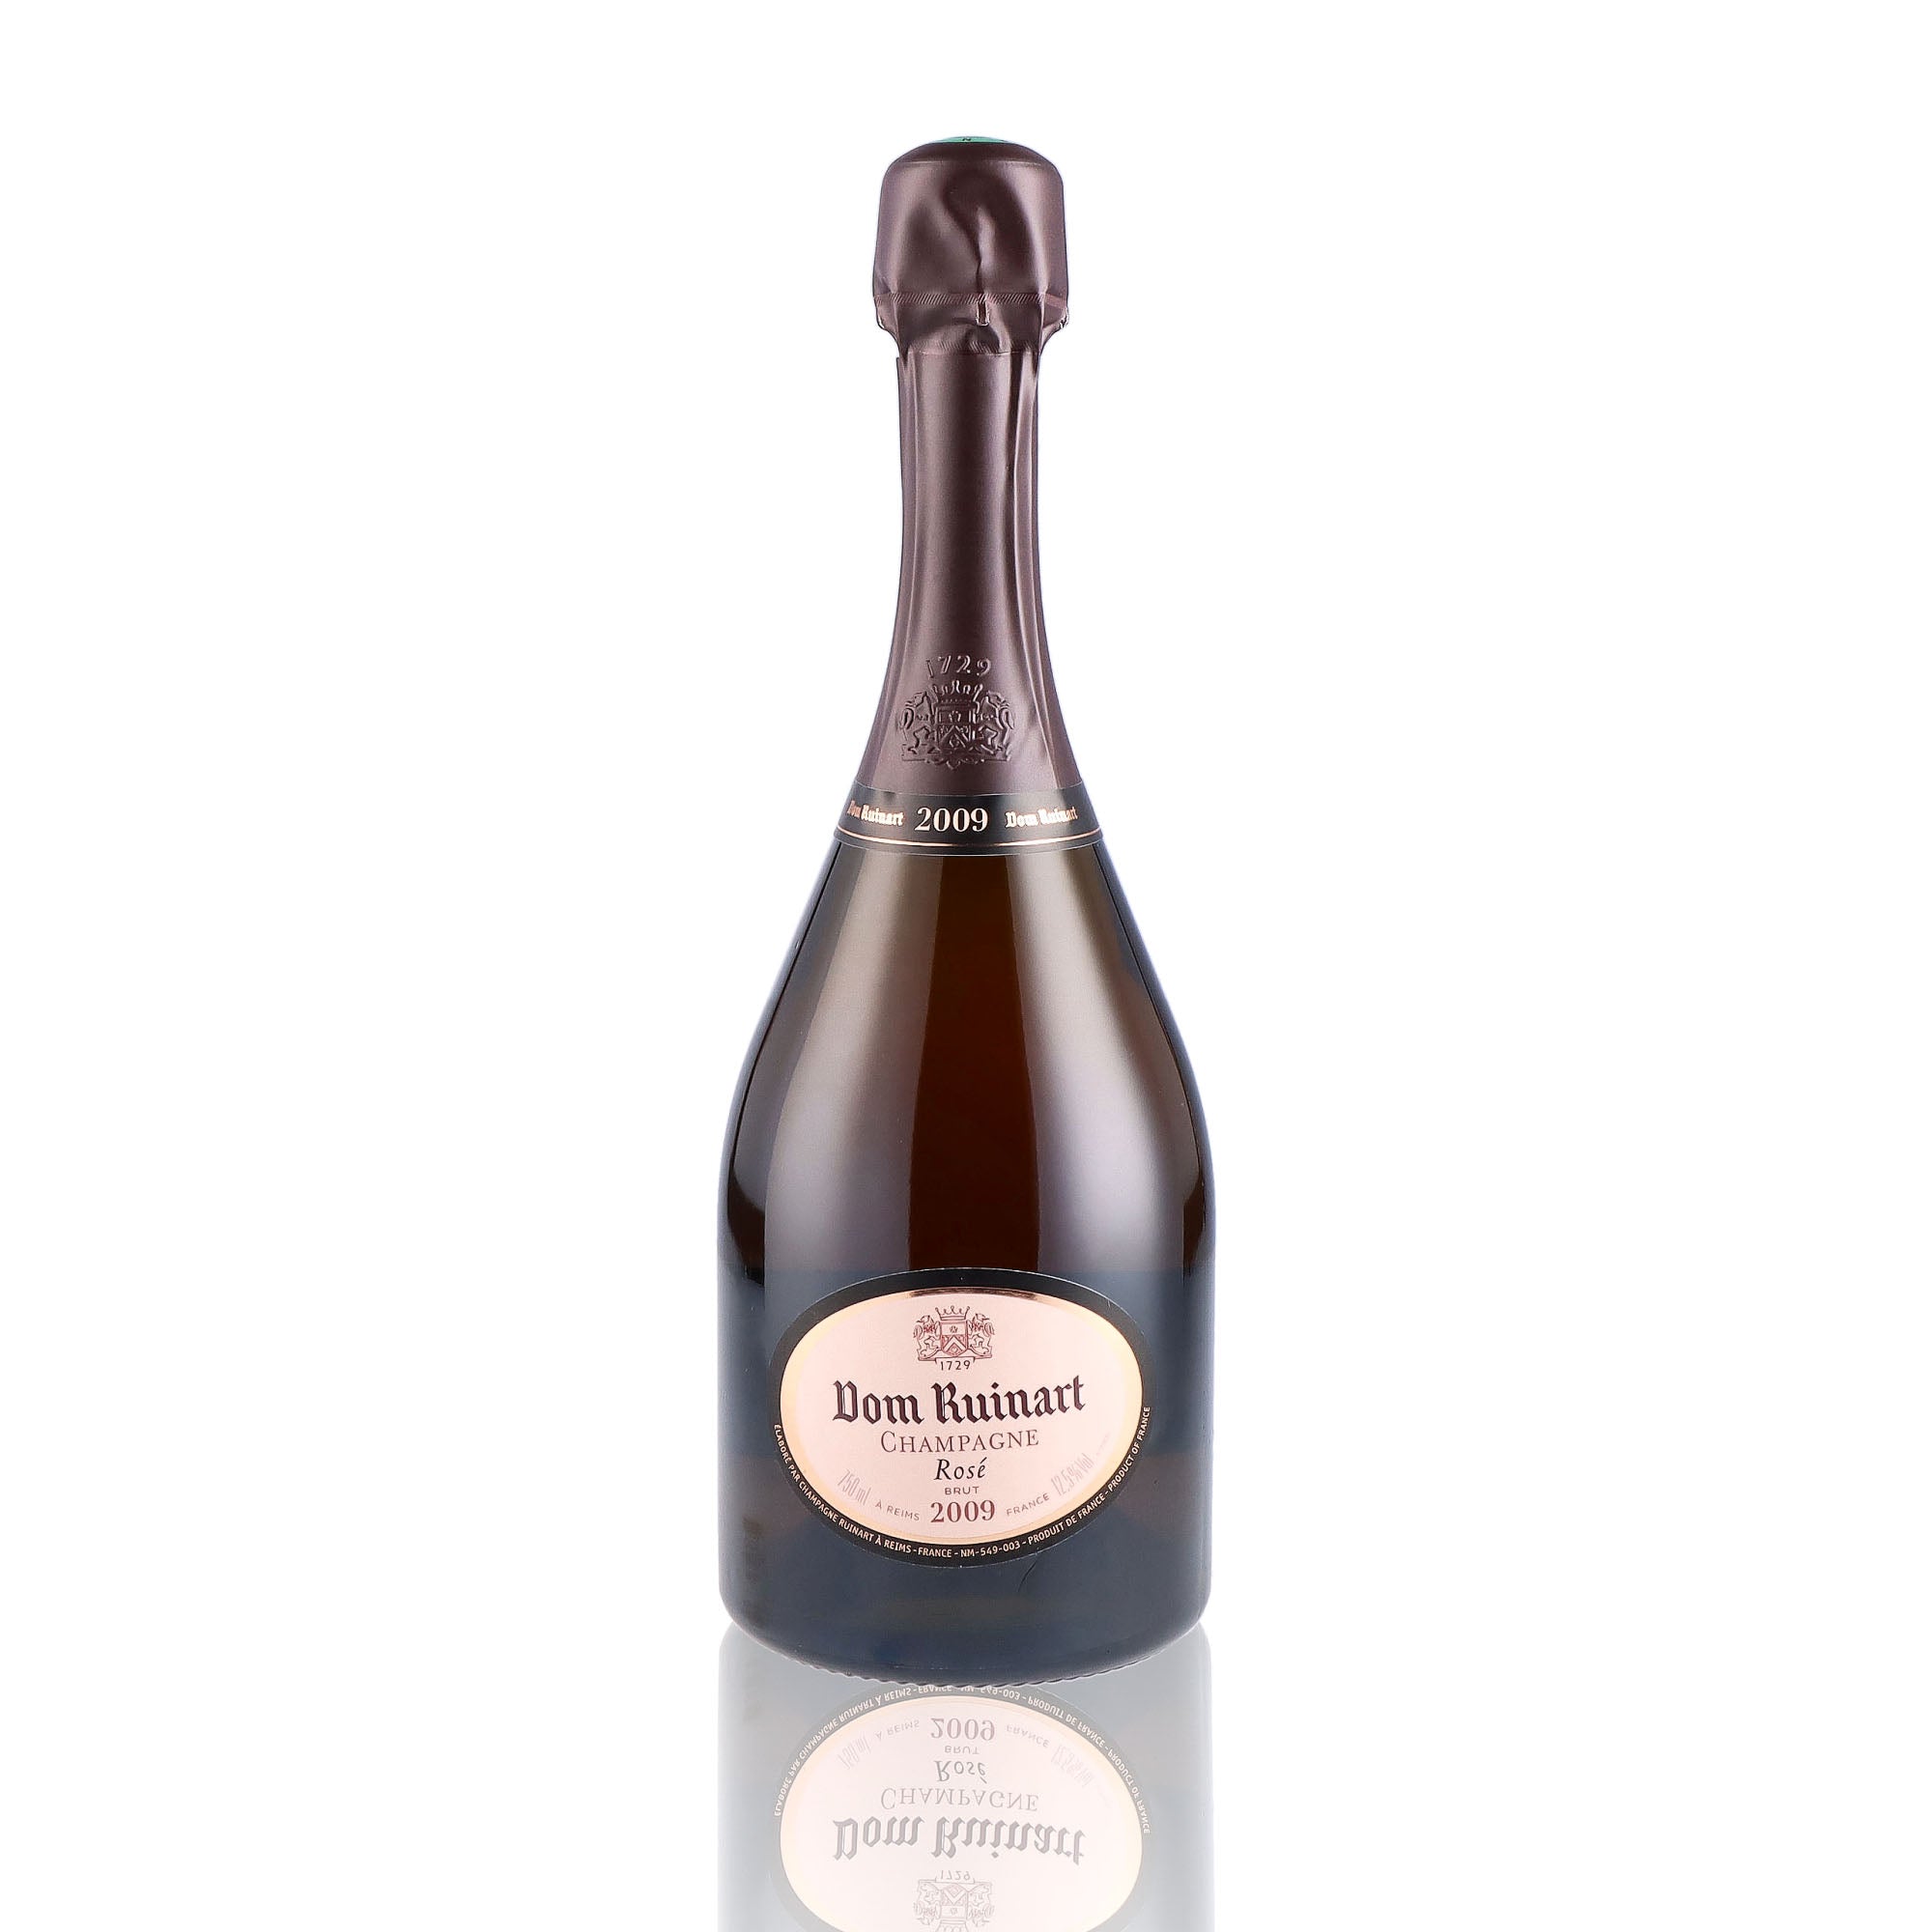 Une bouteille de champagne de la marque Dom Ruinart, de type rosé, millésime 2009.